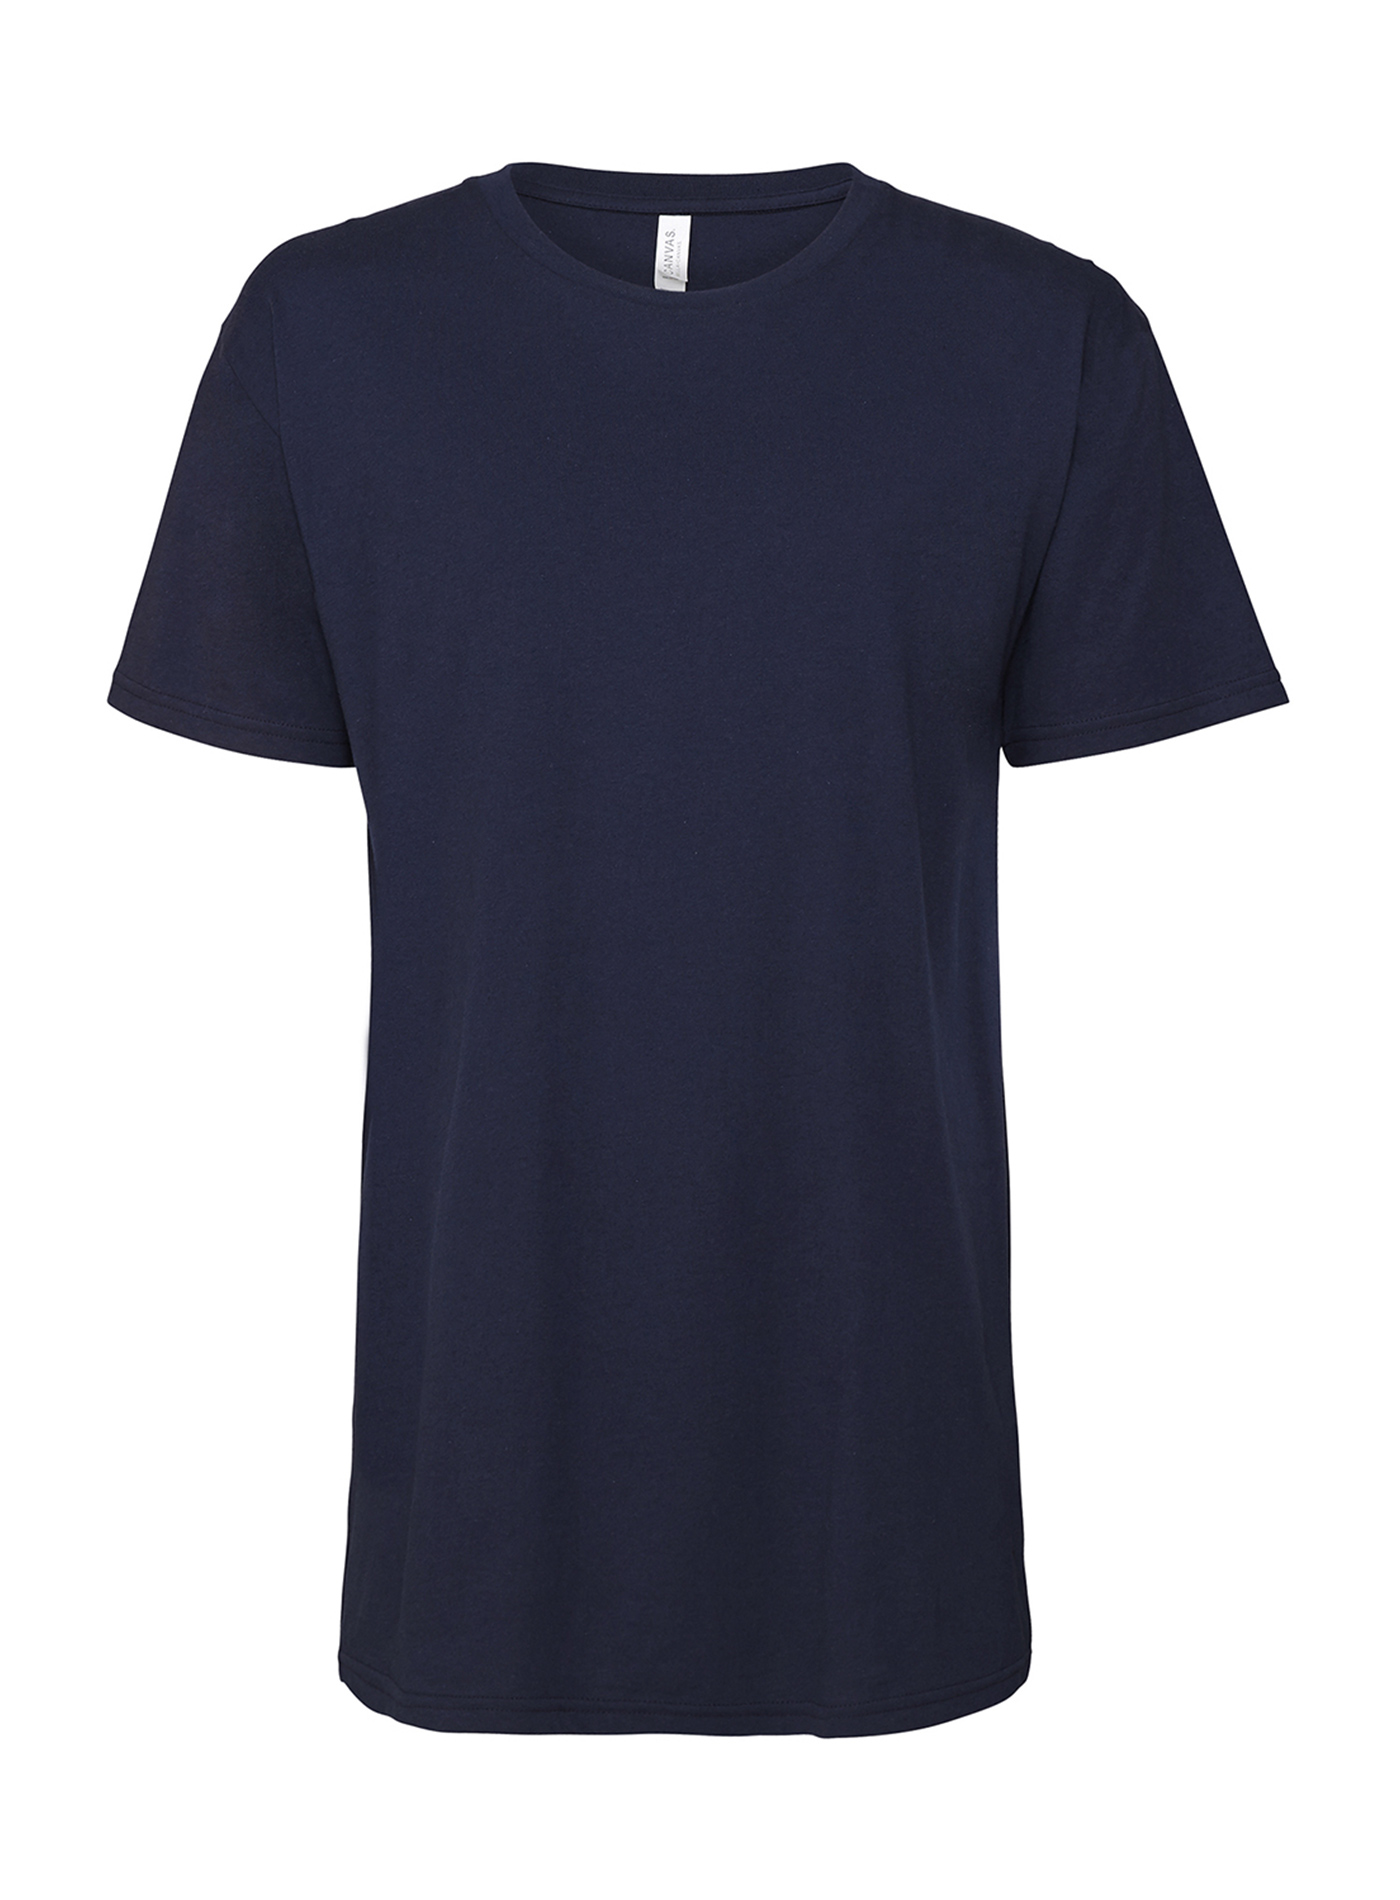 Pánské dlouhé tričko Urban - tmavě modrá L